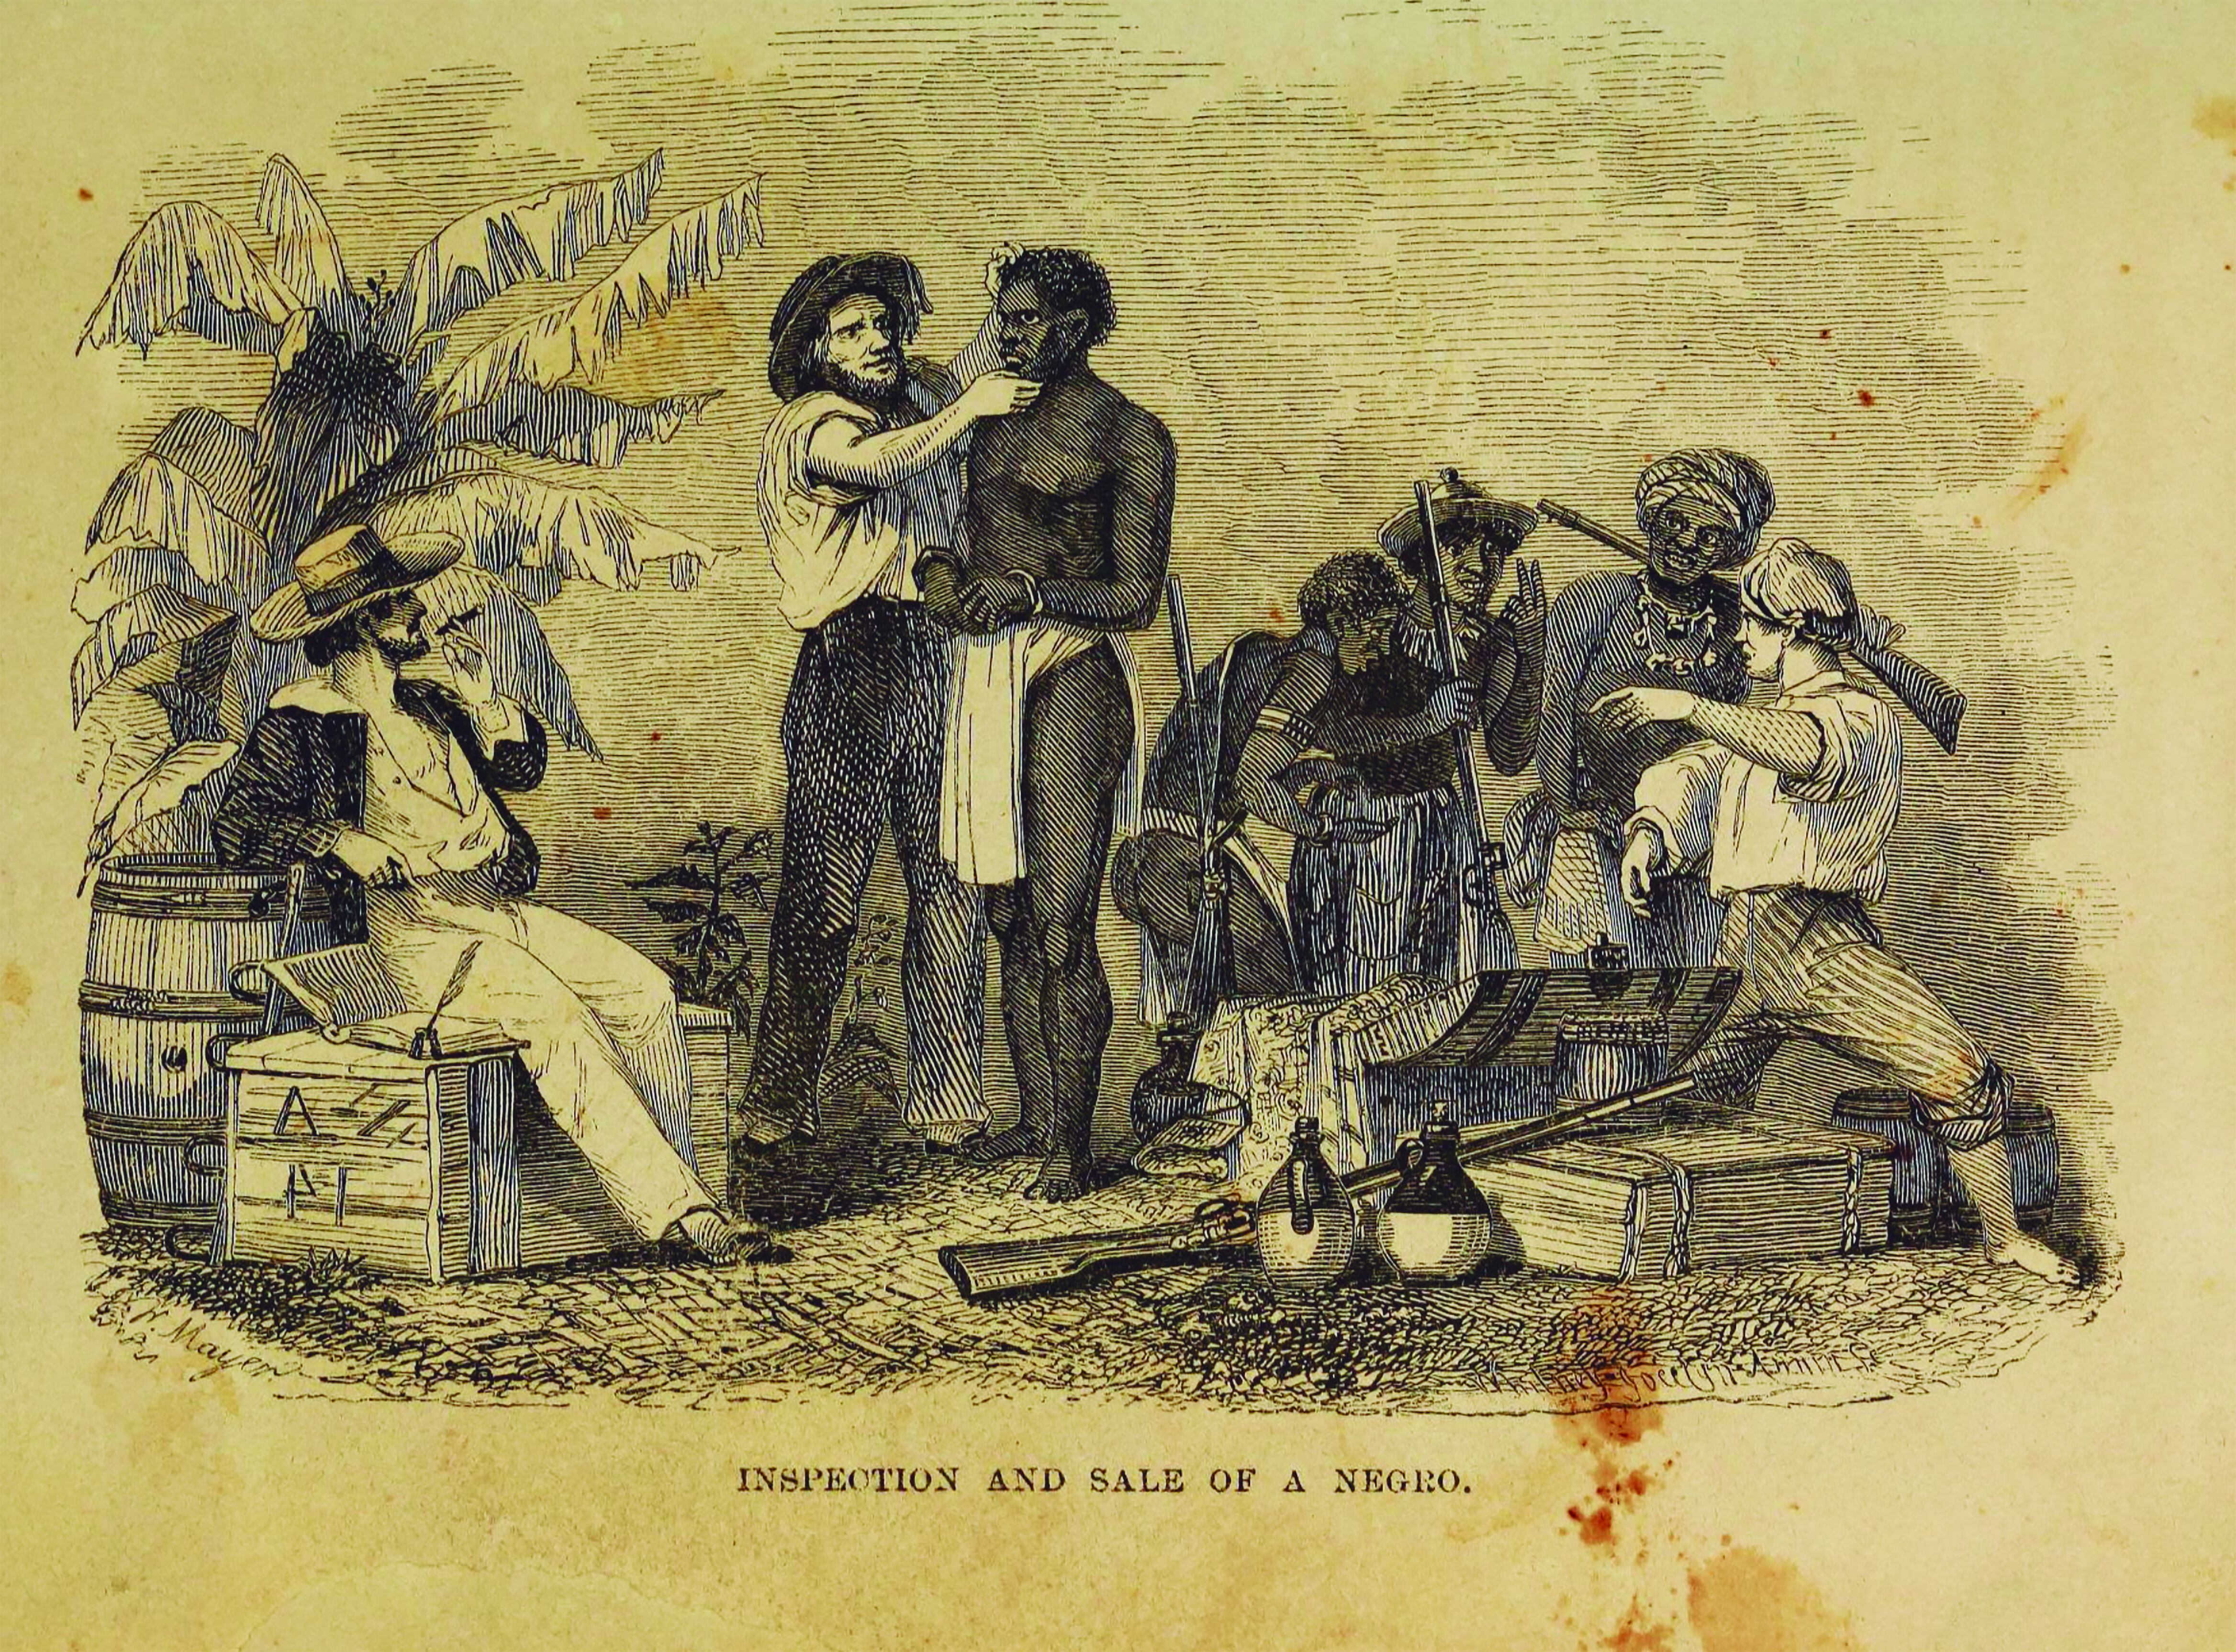 Un grabado conservado en la Biblioteca de Filadelfia representa la inspección y venta de esclavos en Nueva York en 1854.